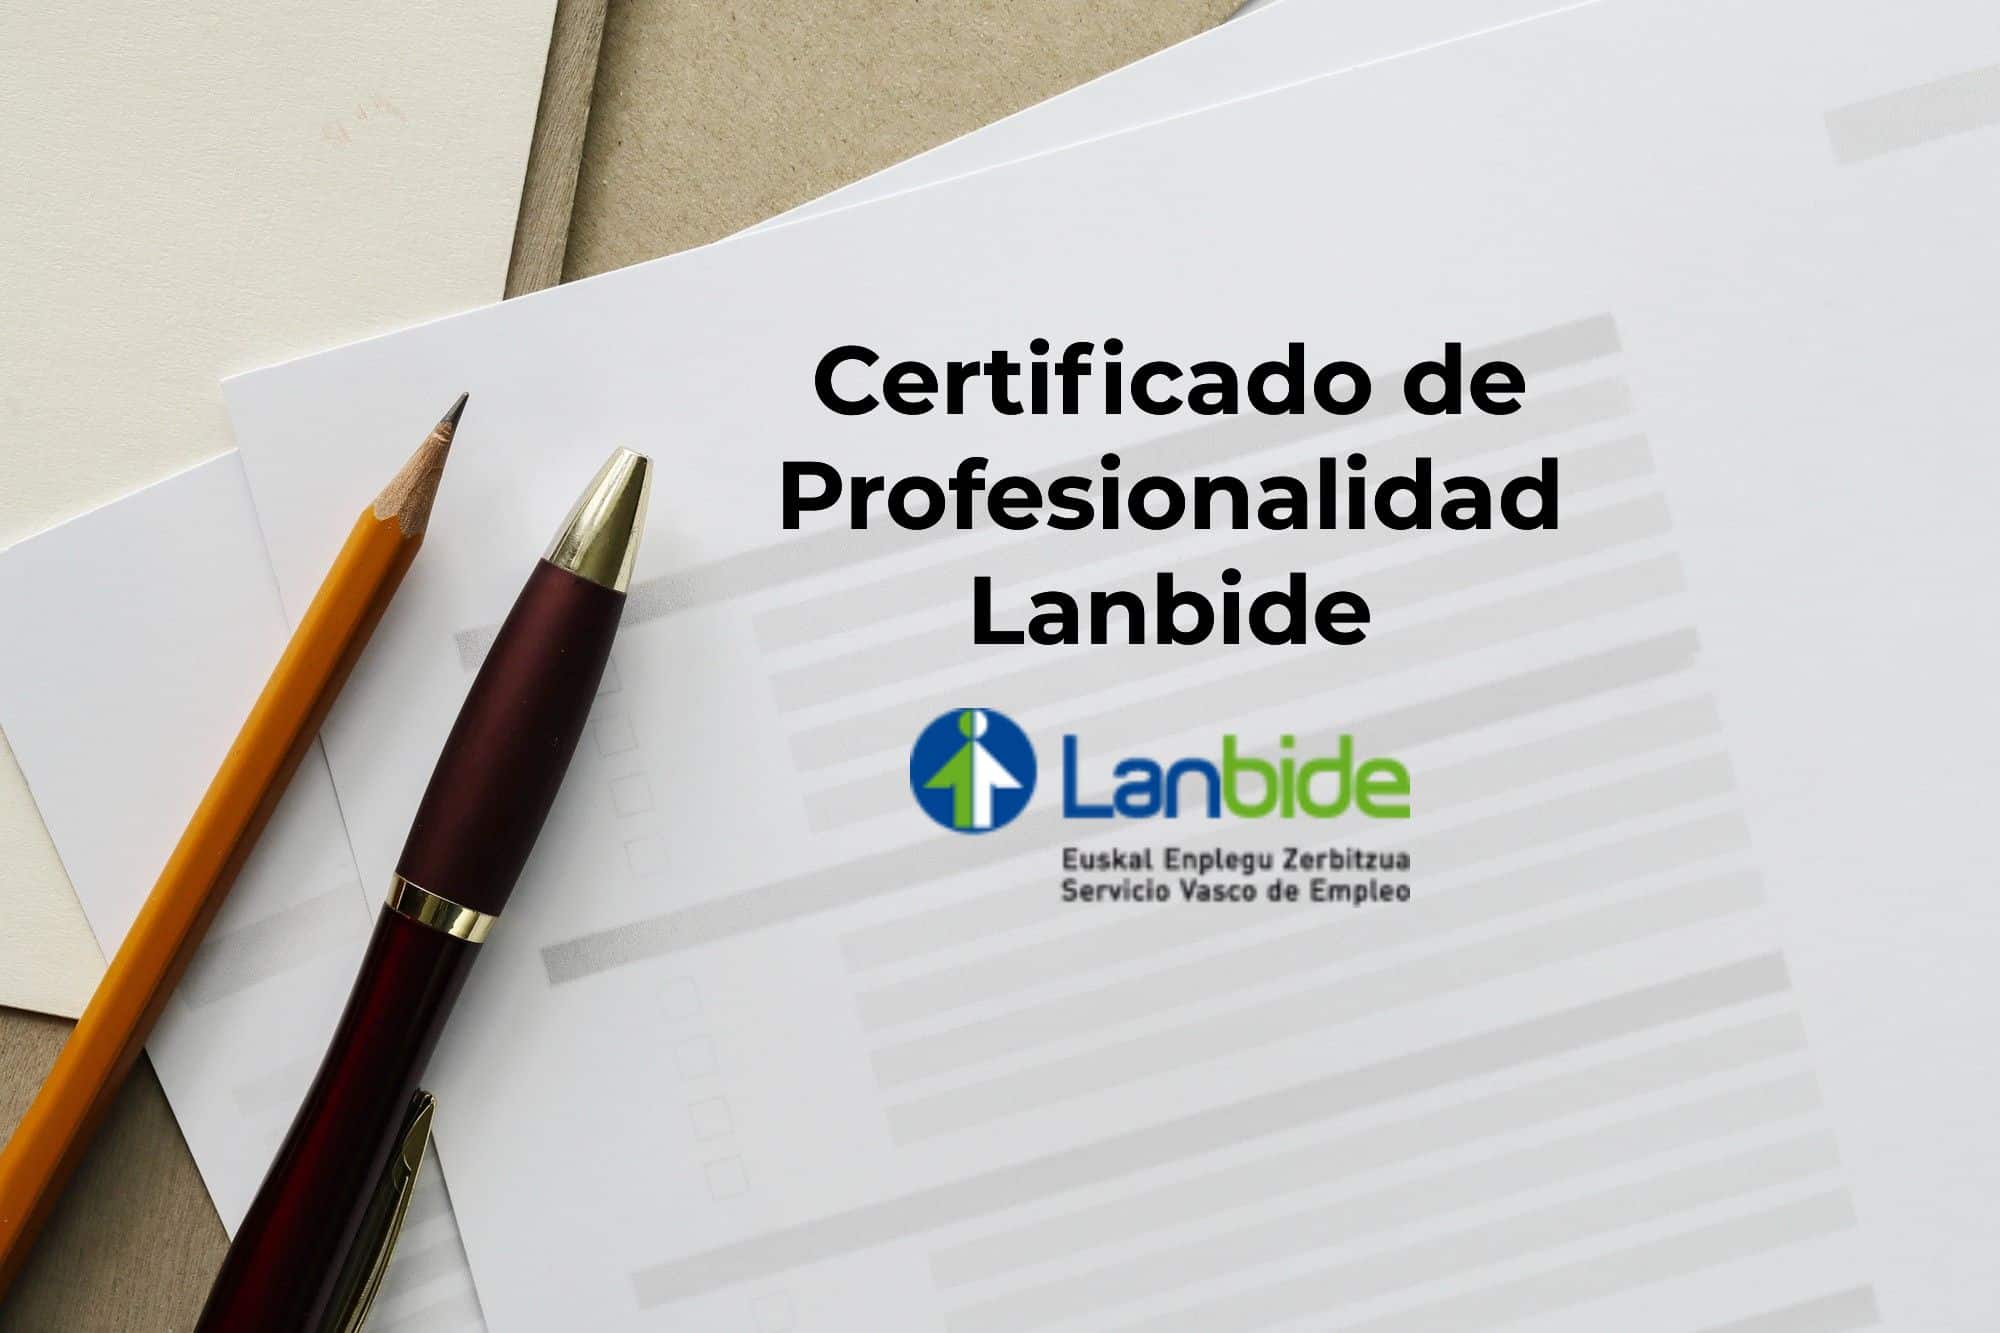 Certificado de Profesionalidad Lanbide sobre una mesa de despacho junto a un lápiz y un bolígrafo.